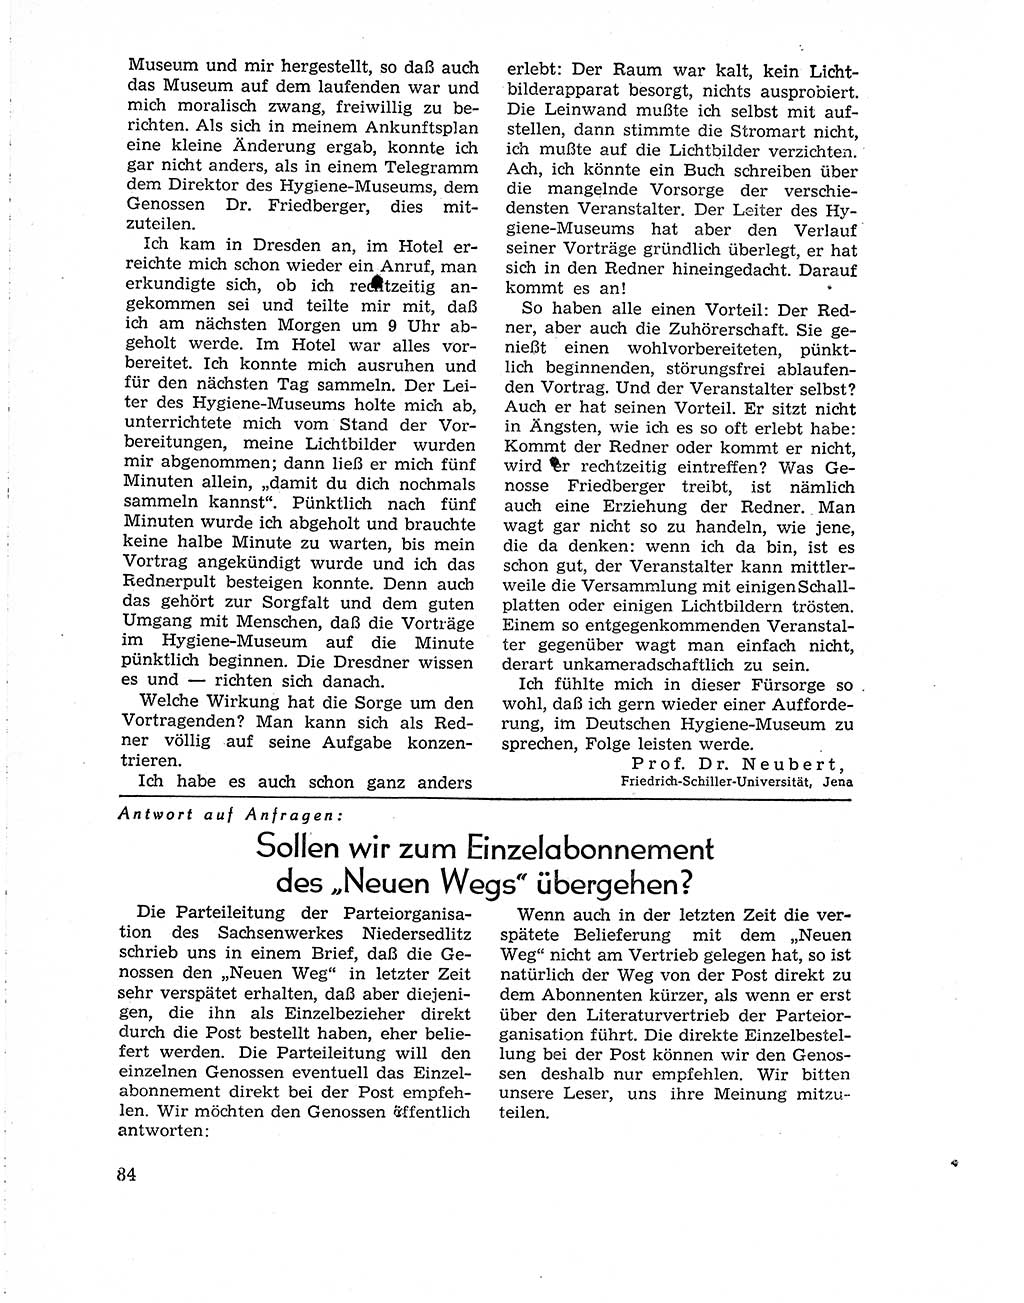 Neuer Weg (NW), Organ des Zentralkomitees (ZK) der SED (Sozialistische Einheitspartei Deutschlands) für Fragen des Parteiaufbaus und des Parteilebens, 10. Jahrgang [Deutsche Demokratische Republik (DDR)] 1955, Seite 84 (NW ZK SED DDR 1955, S. 84)